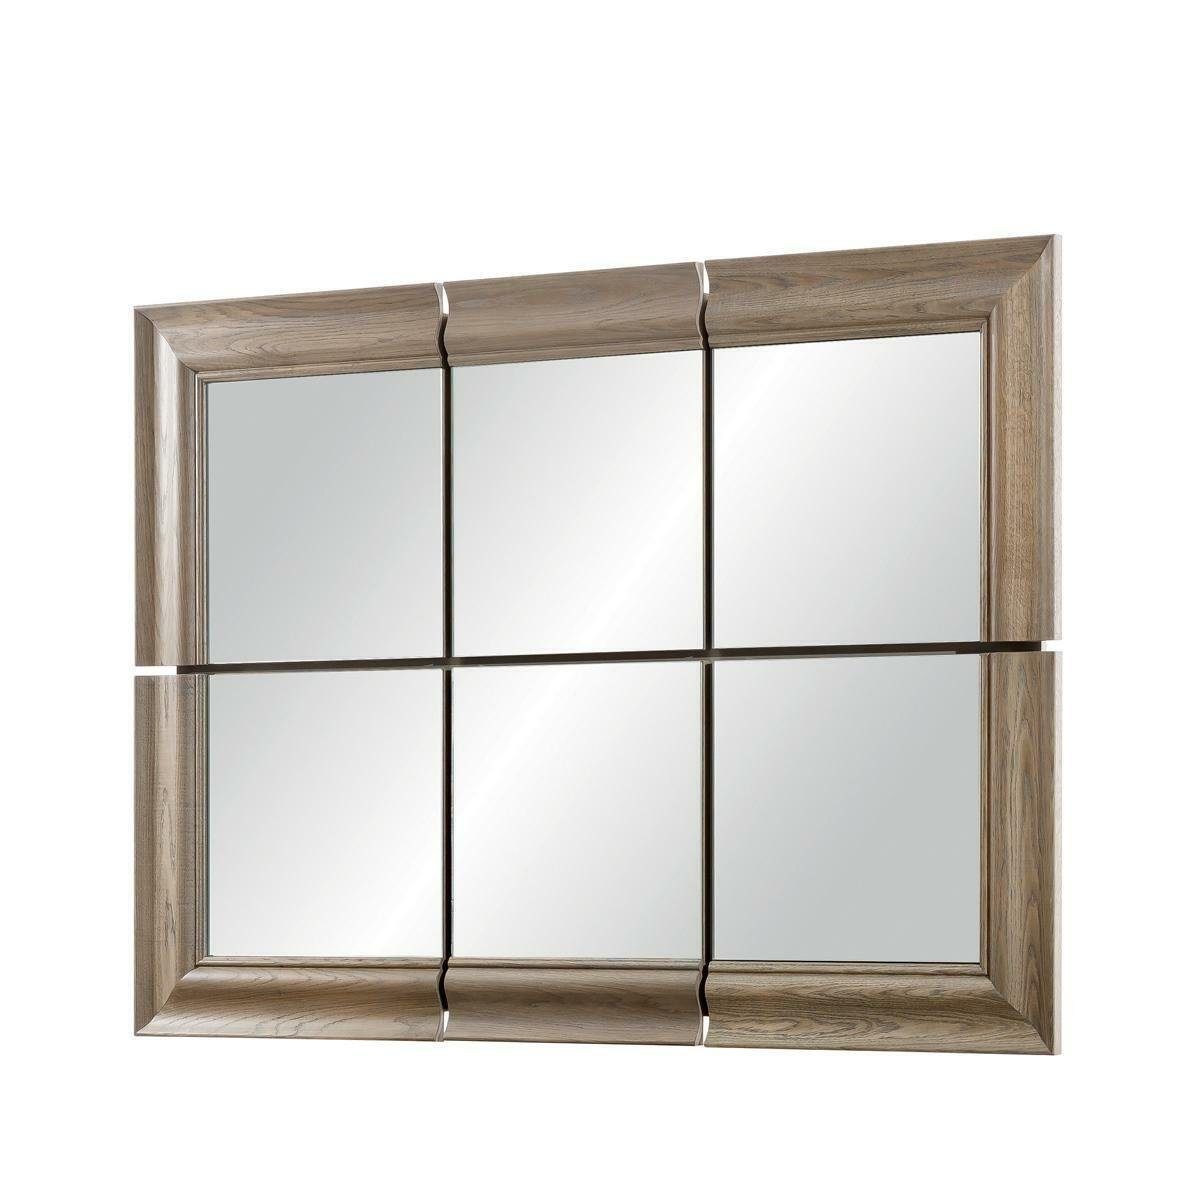 JVmoebel Wandspiegel Hängespiegel Echt Wandspiegel Großer Holz Moderner Rahmen Spiegel